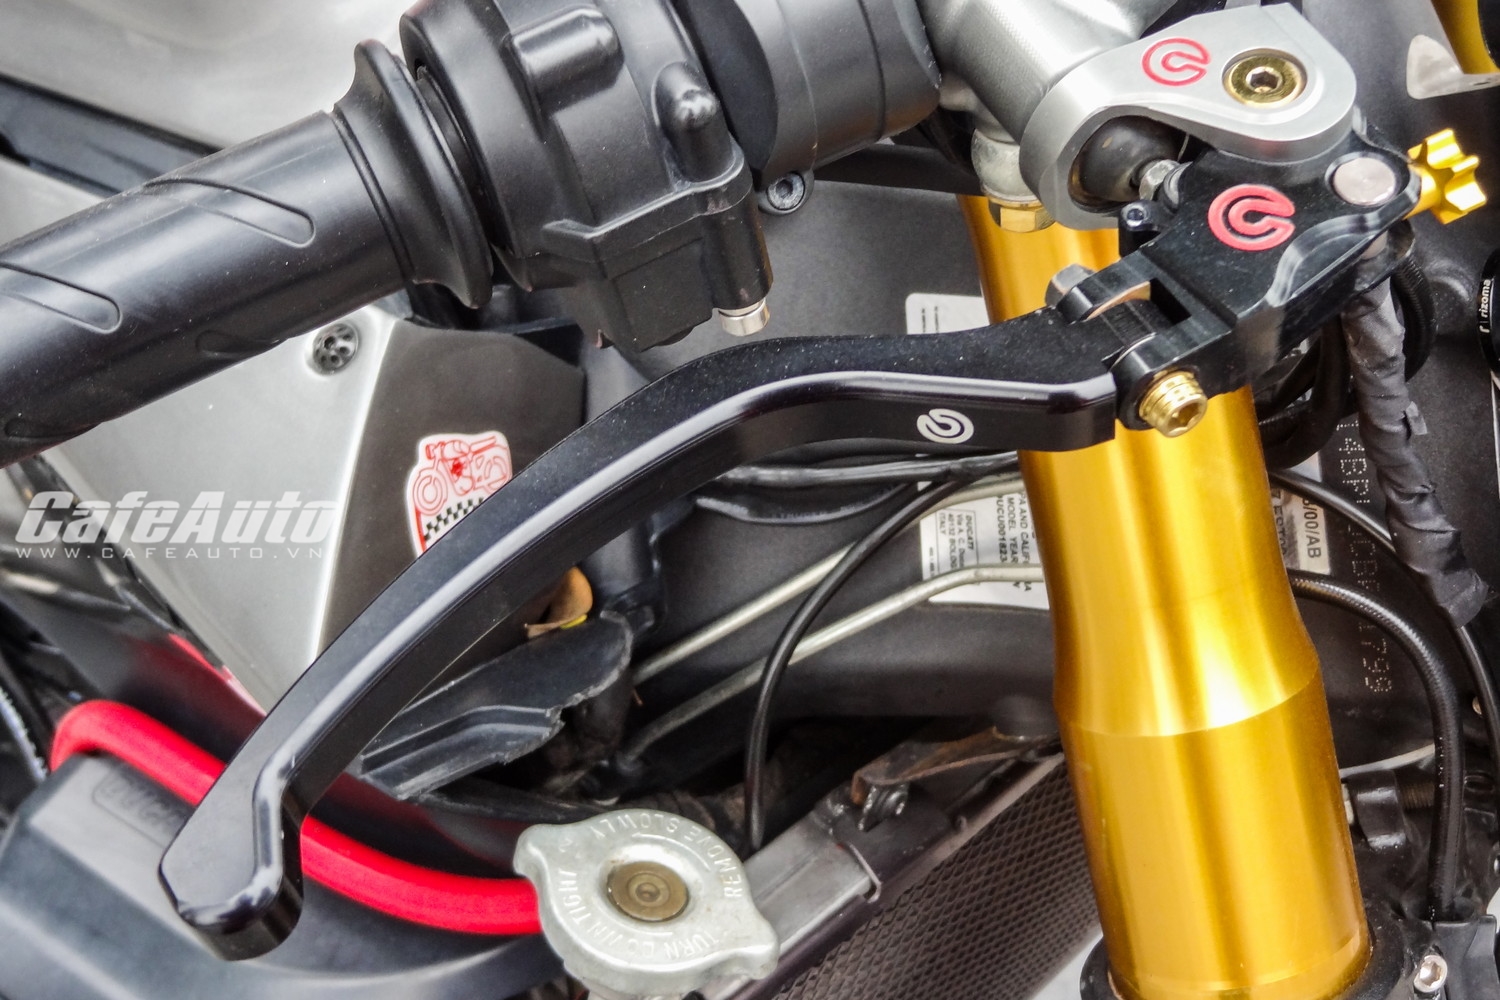 Chi tiết Ducati 1199 Panigale S Cafe Racer độc nhất Hà Nội - ảnh 5